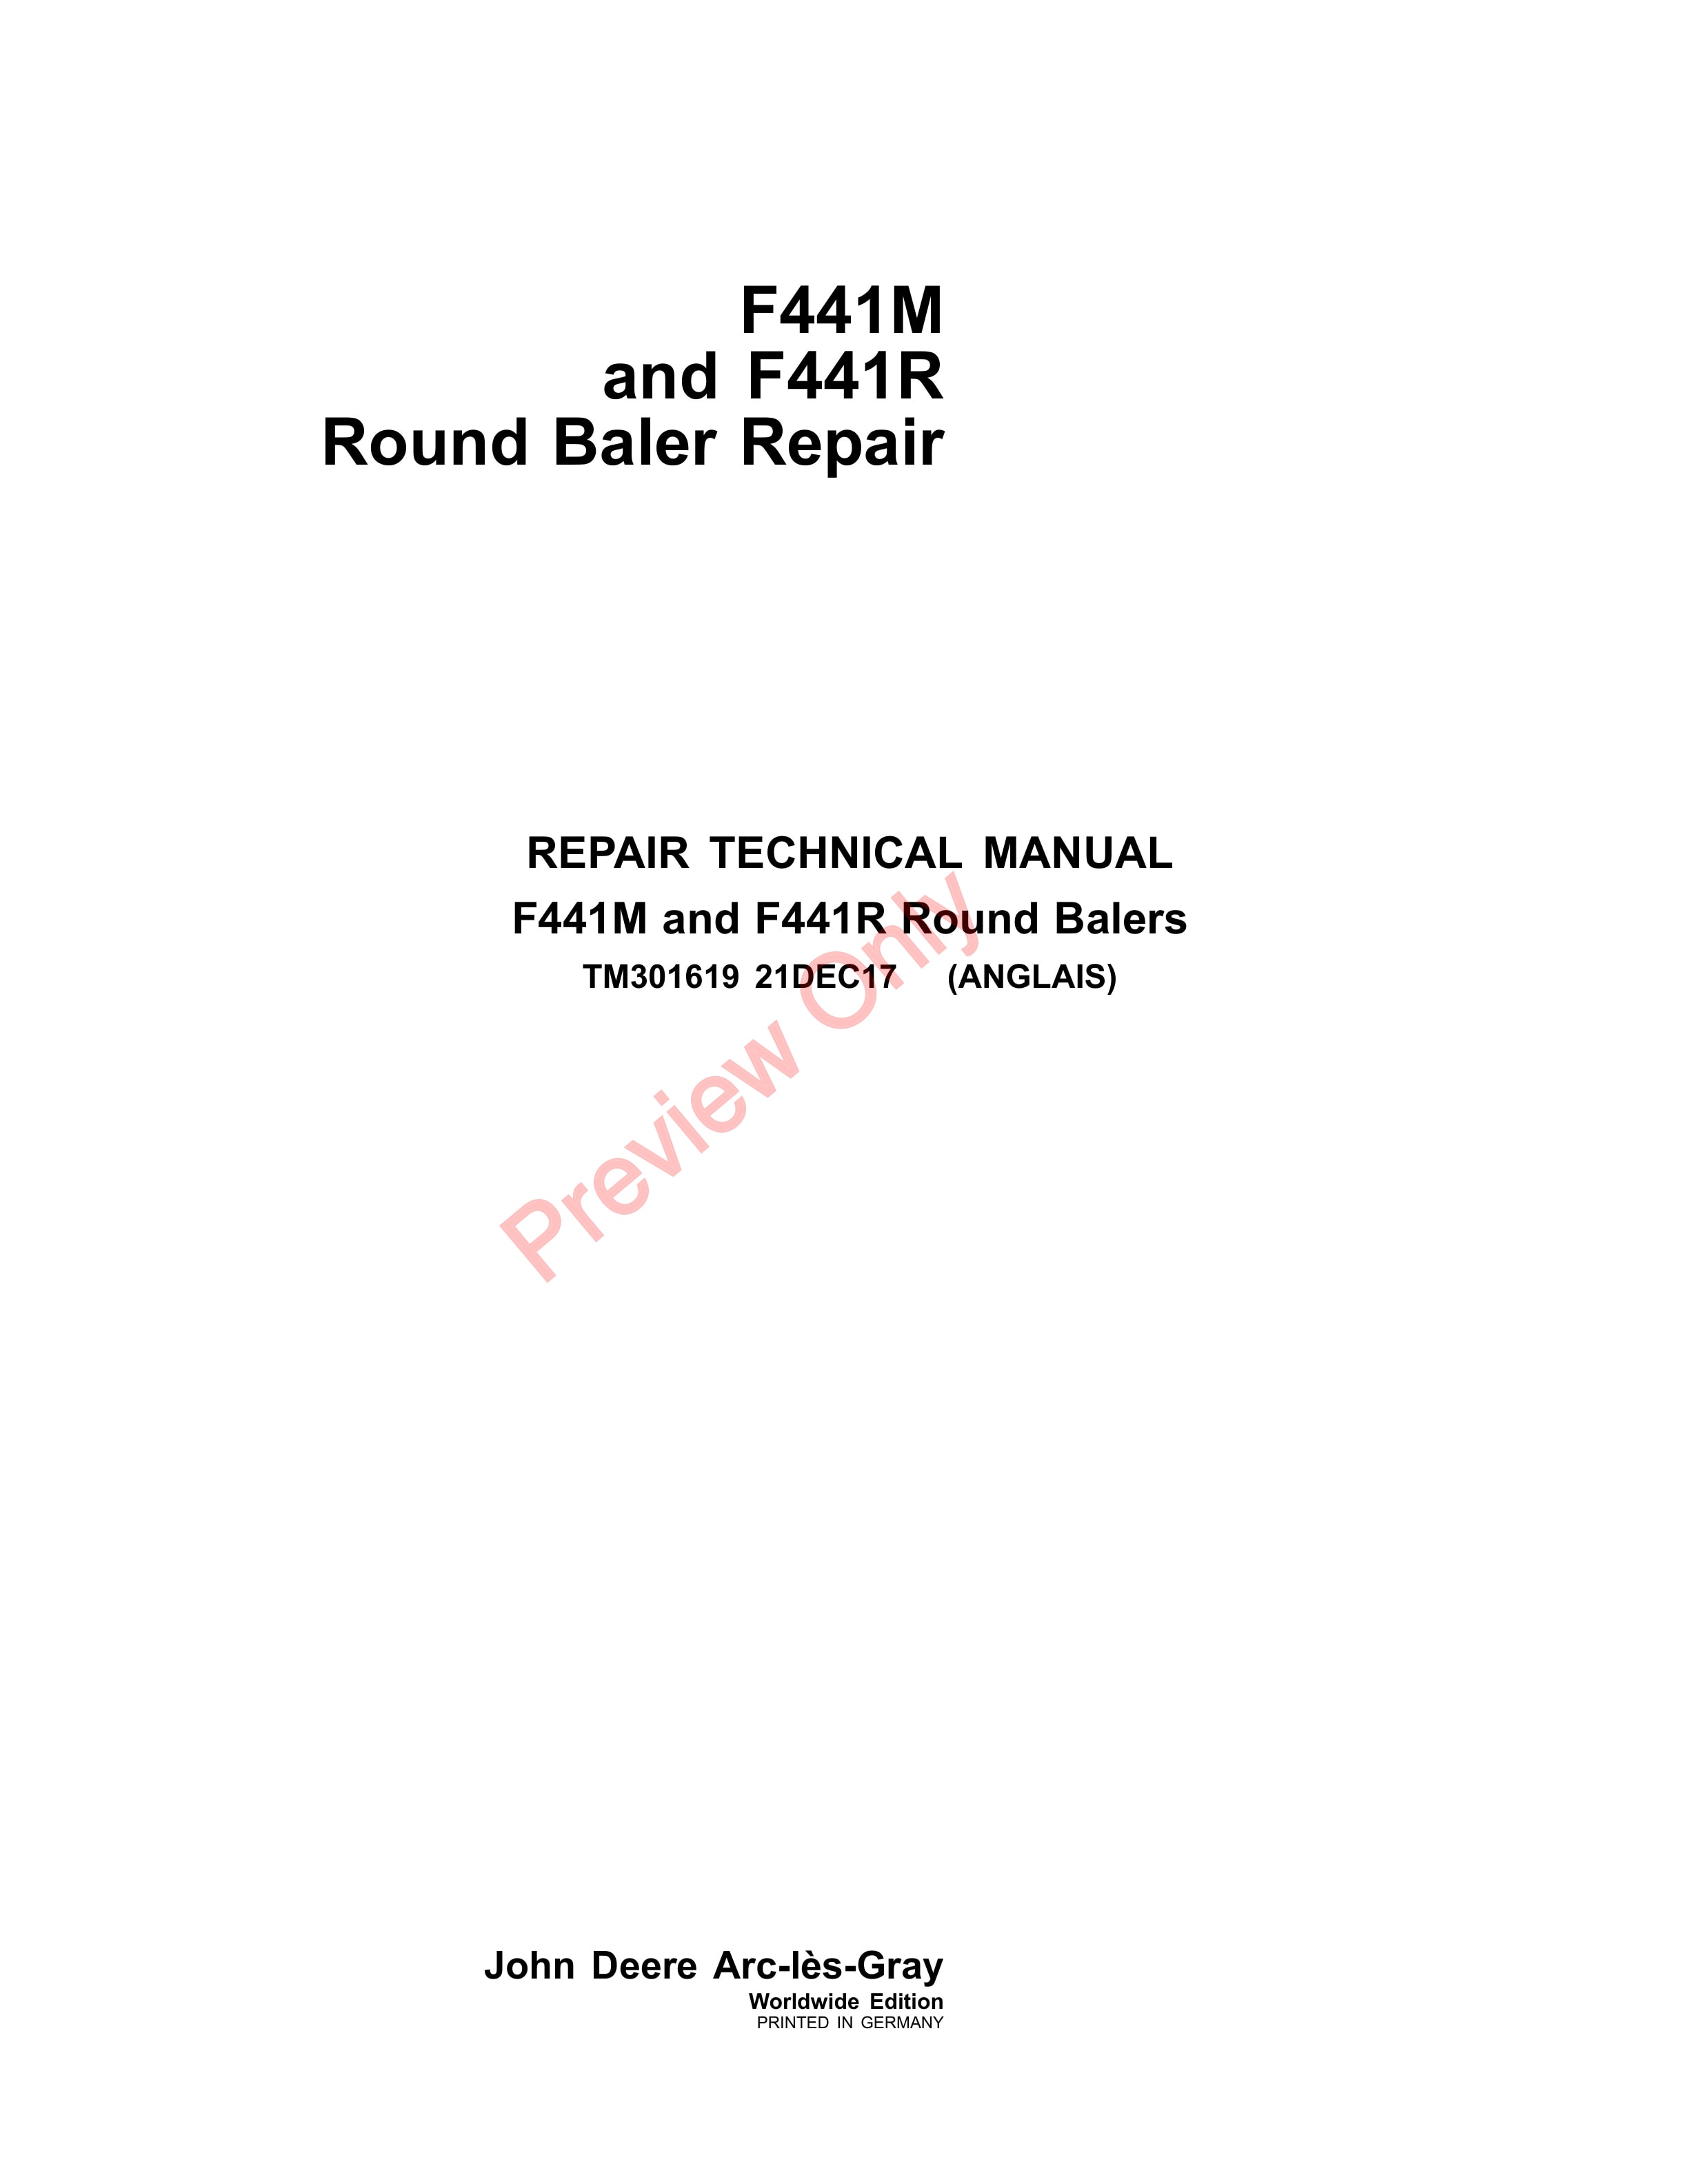 John Deere F441M and F441R Round Baler Repair Technical Manual TM301619 02MAY18 1